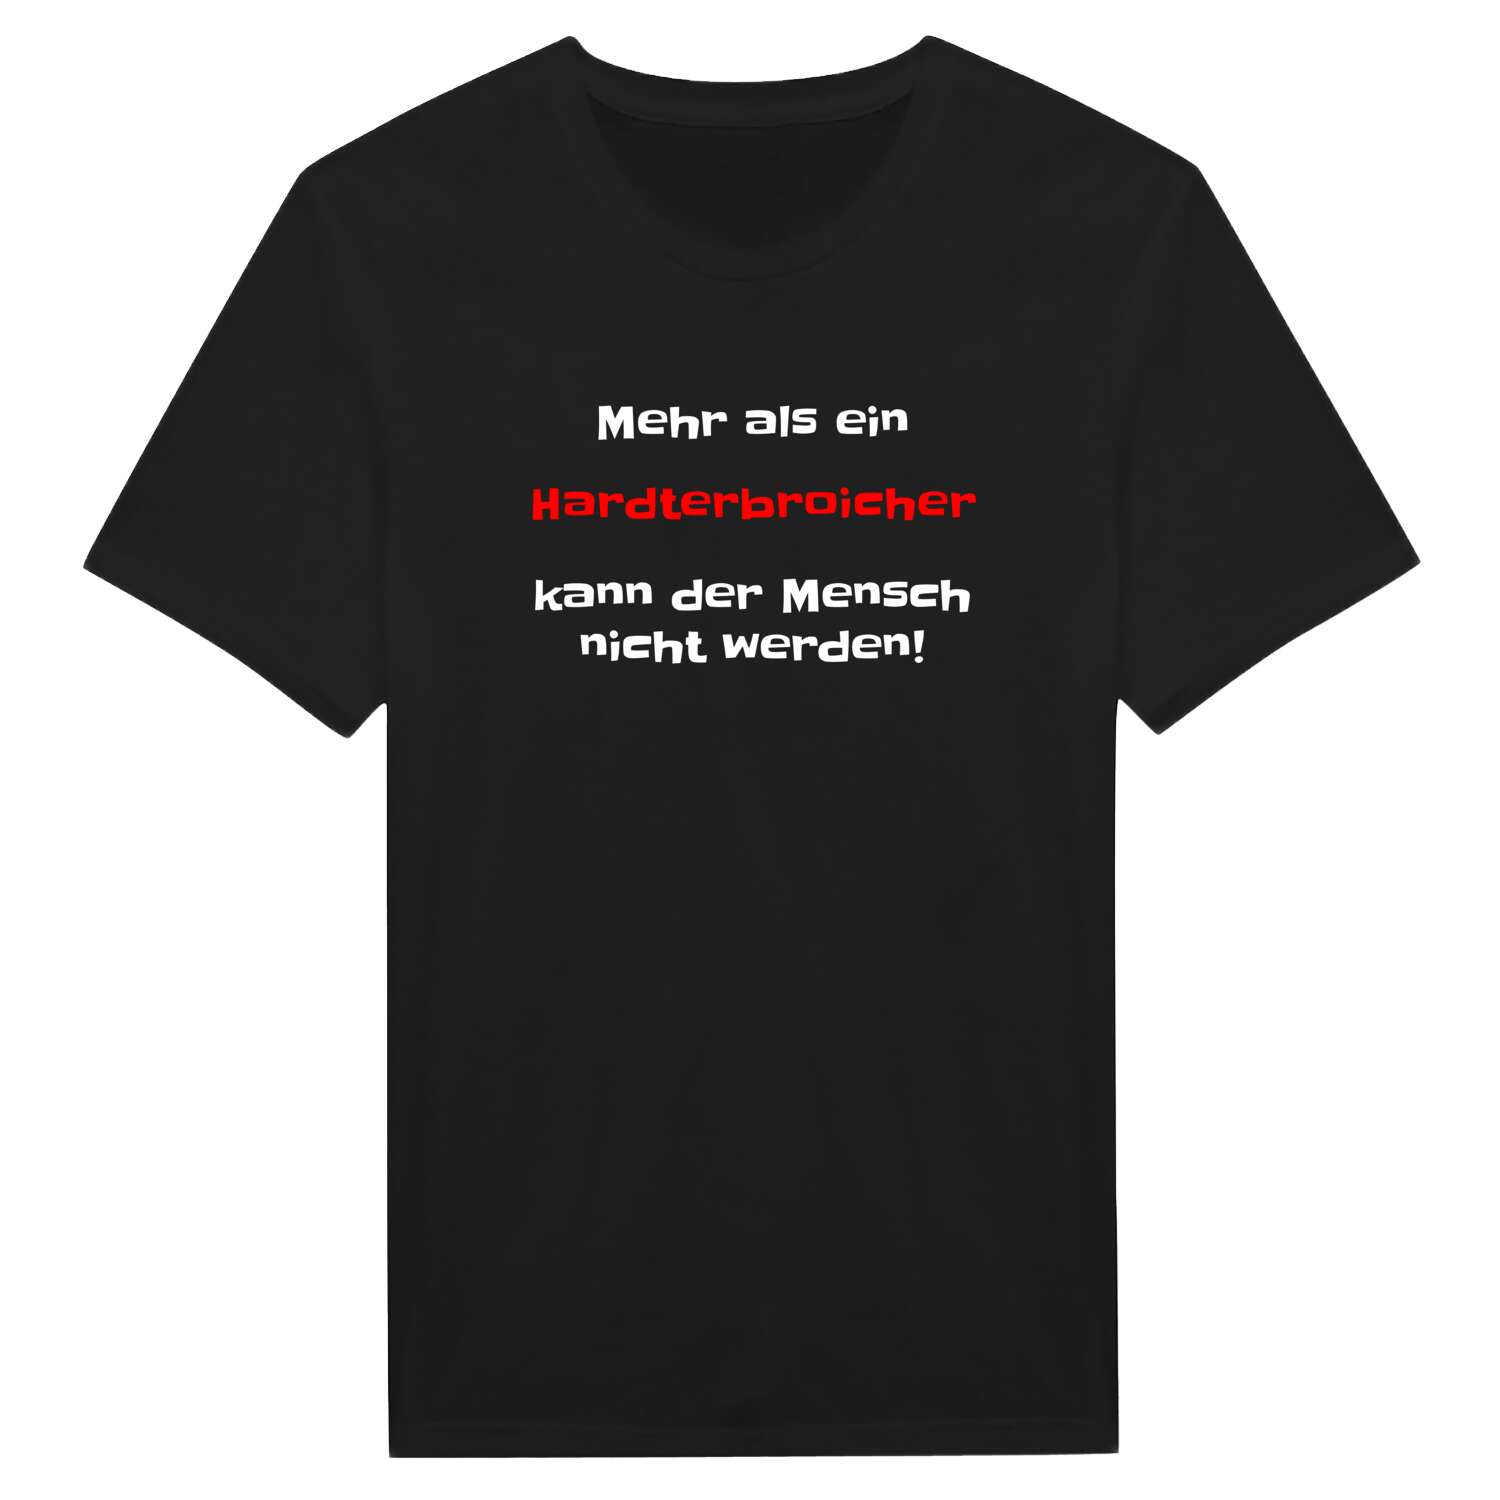 Hardterbroich T-Shirt »Mehr als ein«